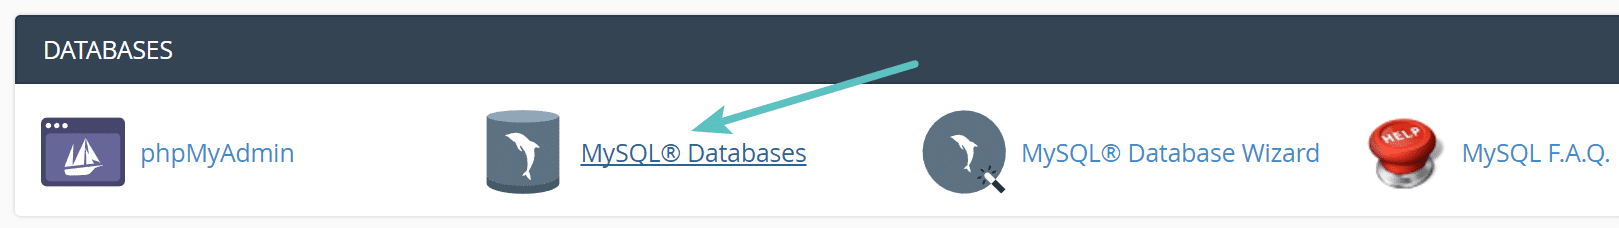 cPanel MySQL databases